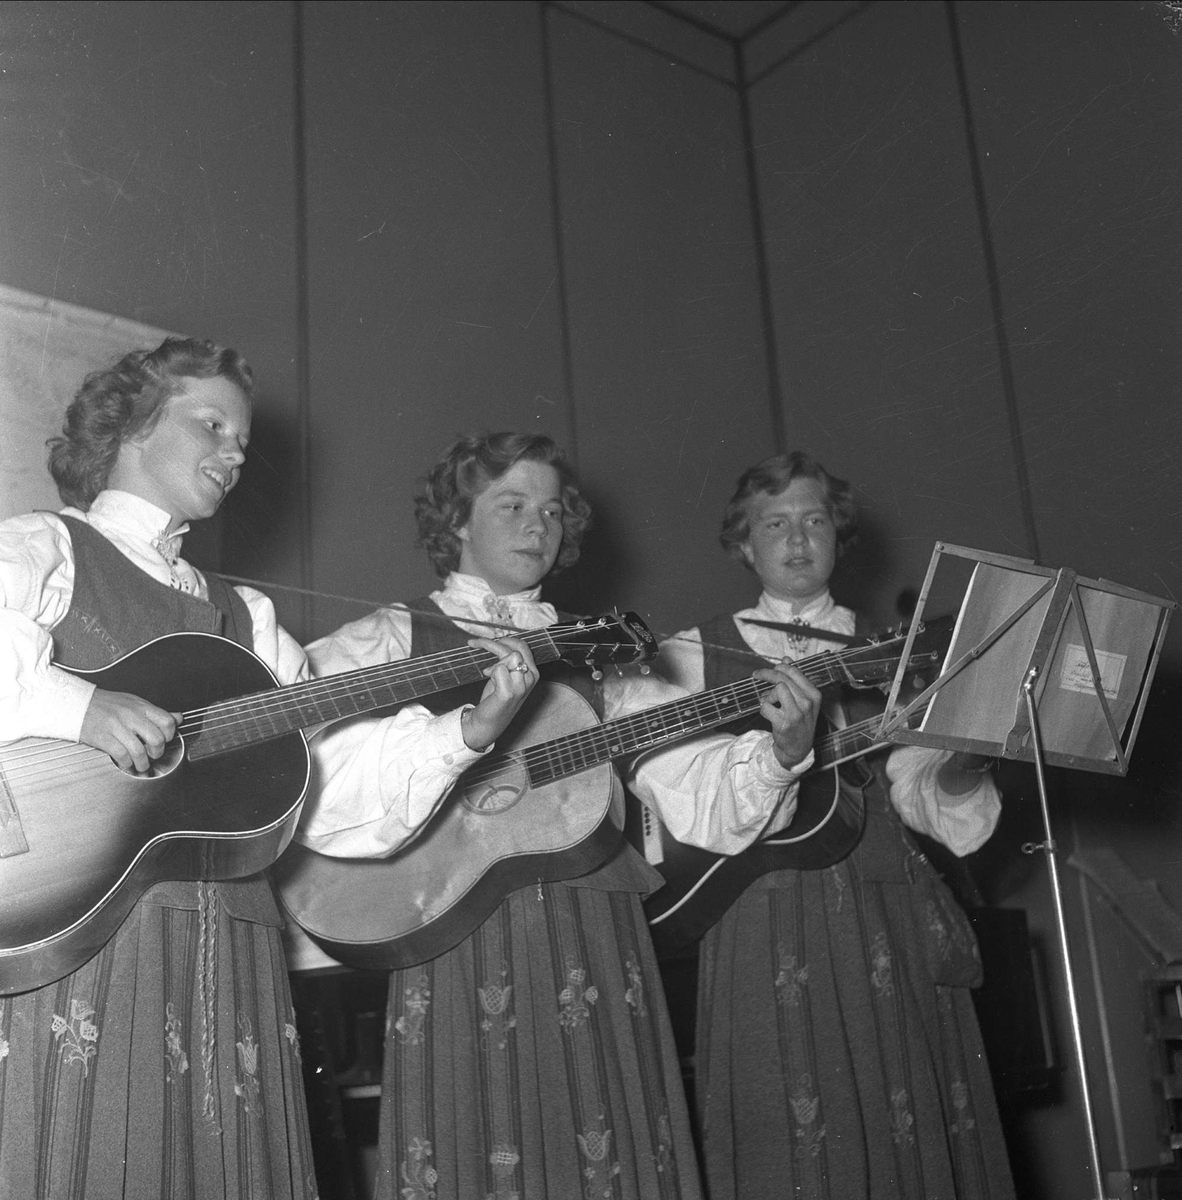 Tre kvinner opptrer med gitarer. Oslo mai 1952. Bygdelag, Romsdalslaget.